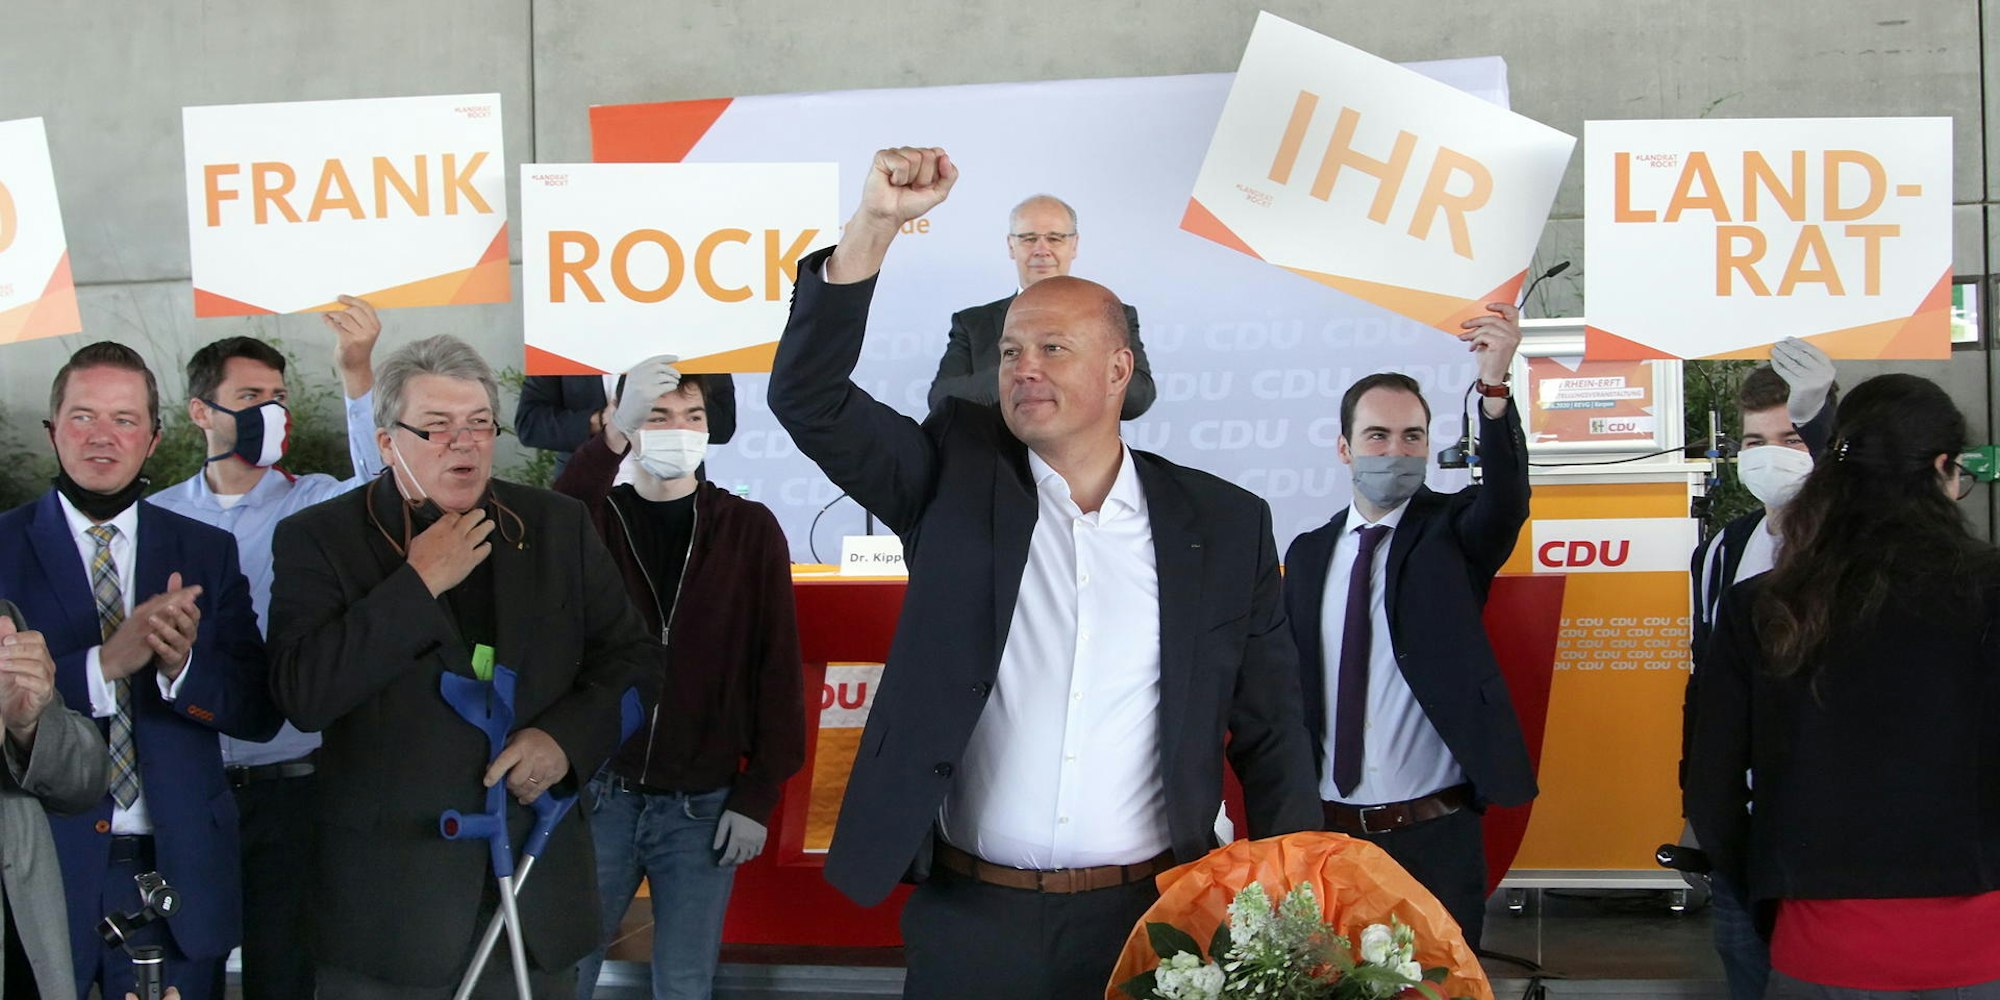 Frank Rock ließ sich feiern, nachdem seine CDU-Parteifreunde ihn als Landratskandidaten nominiert hatten.